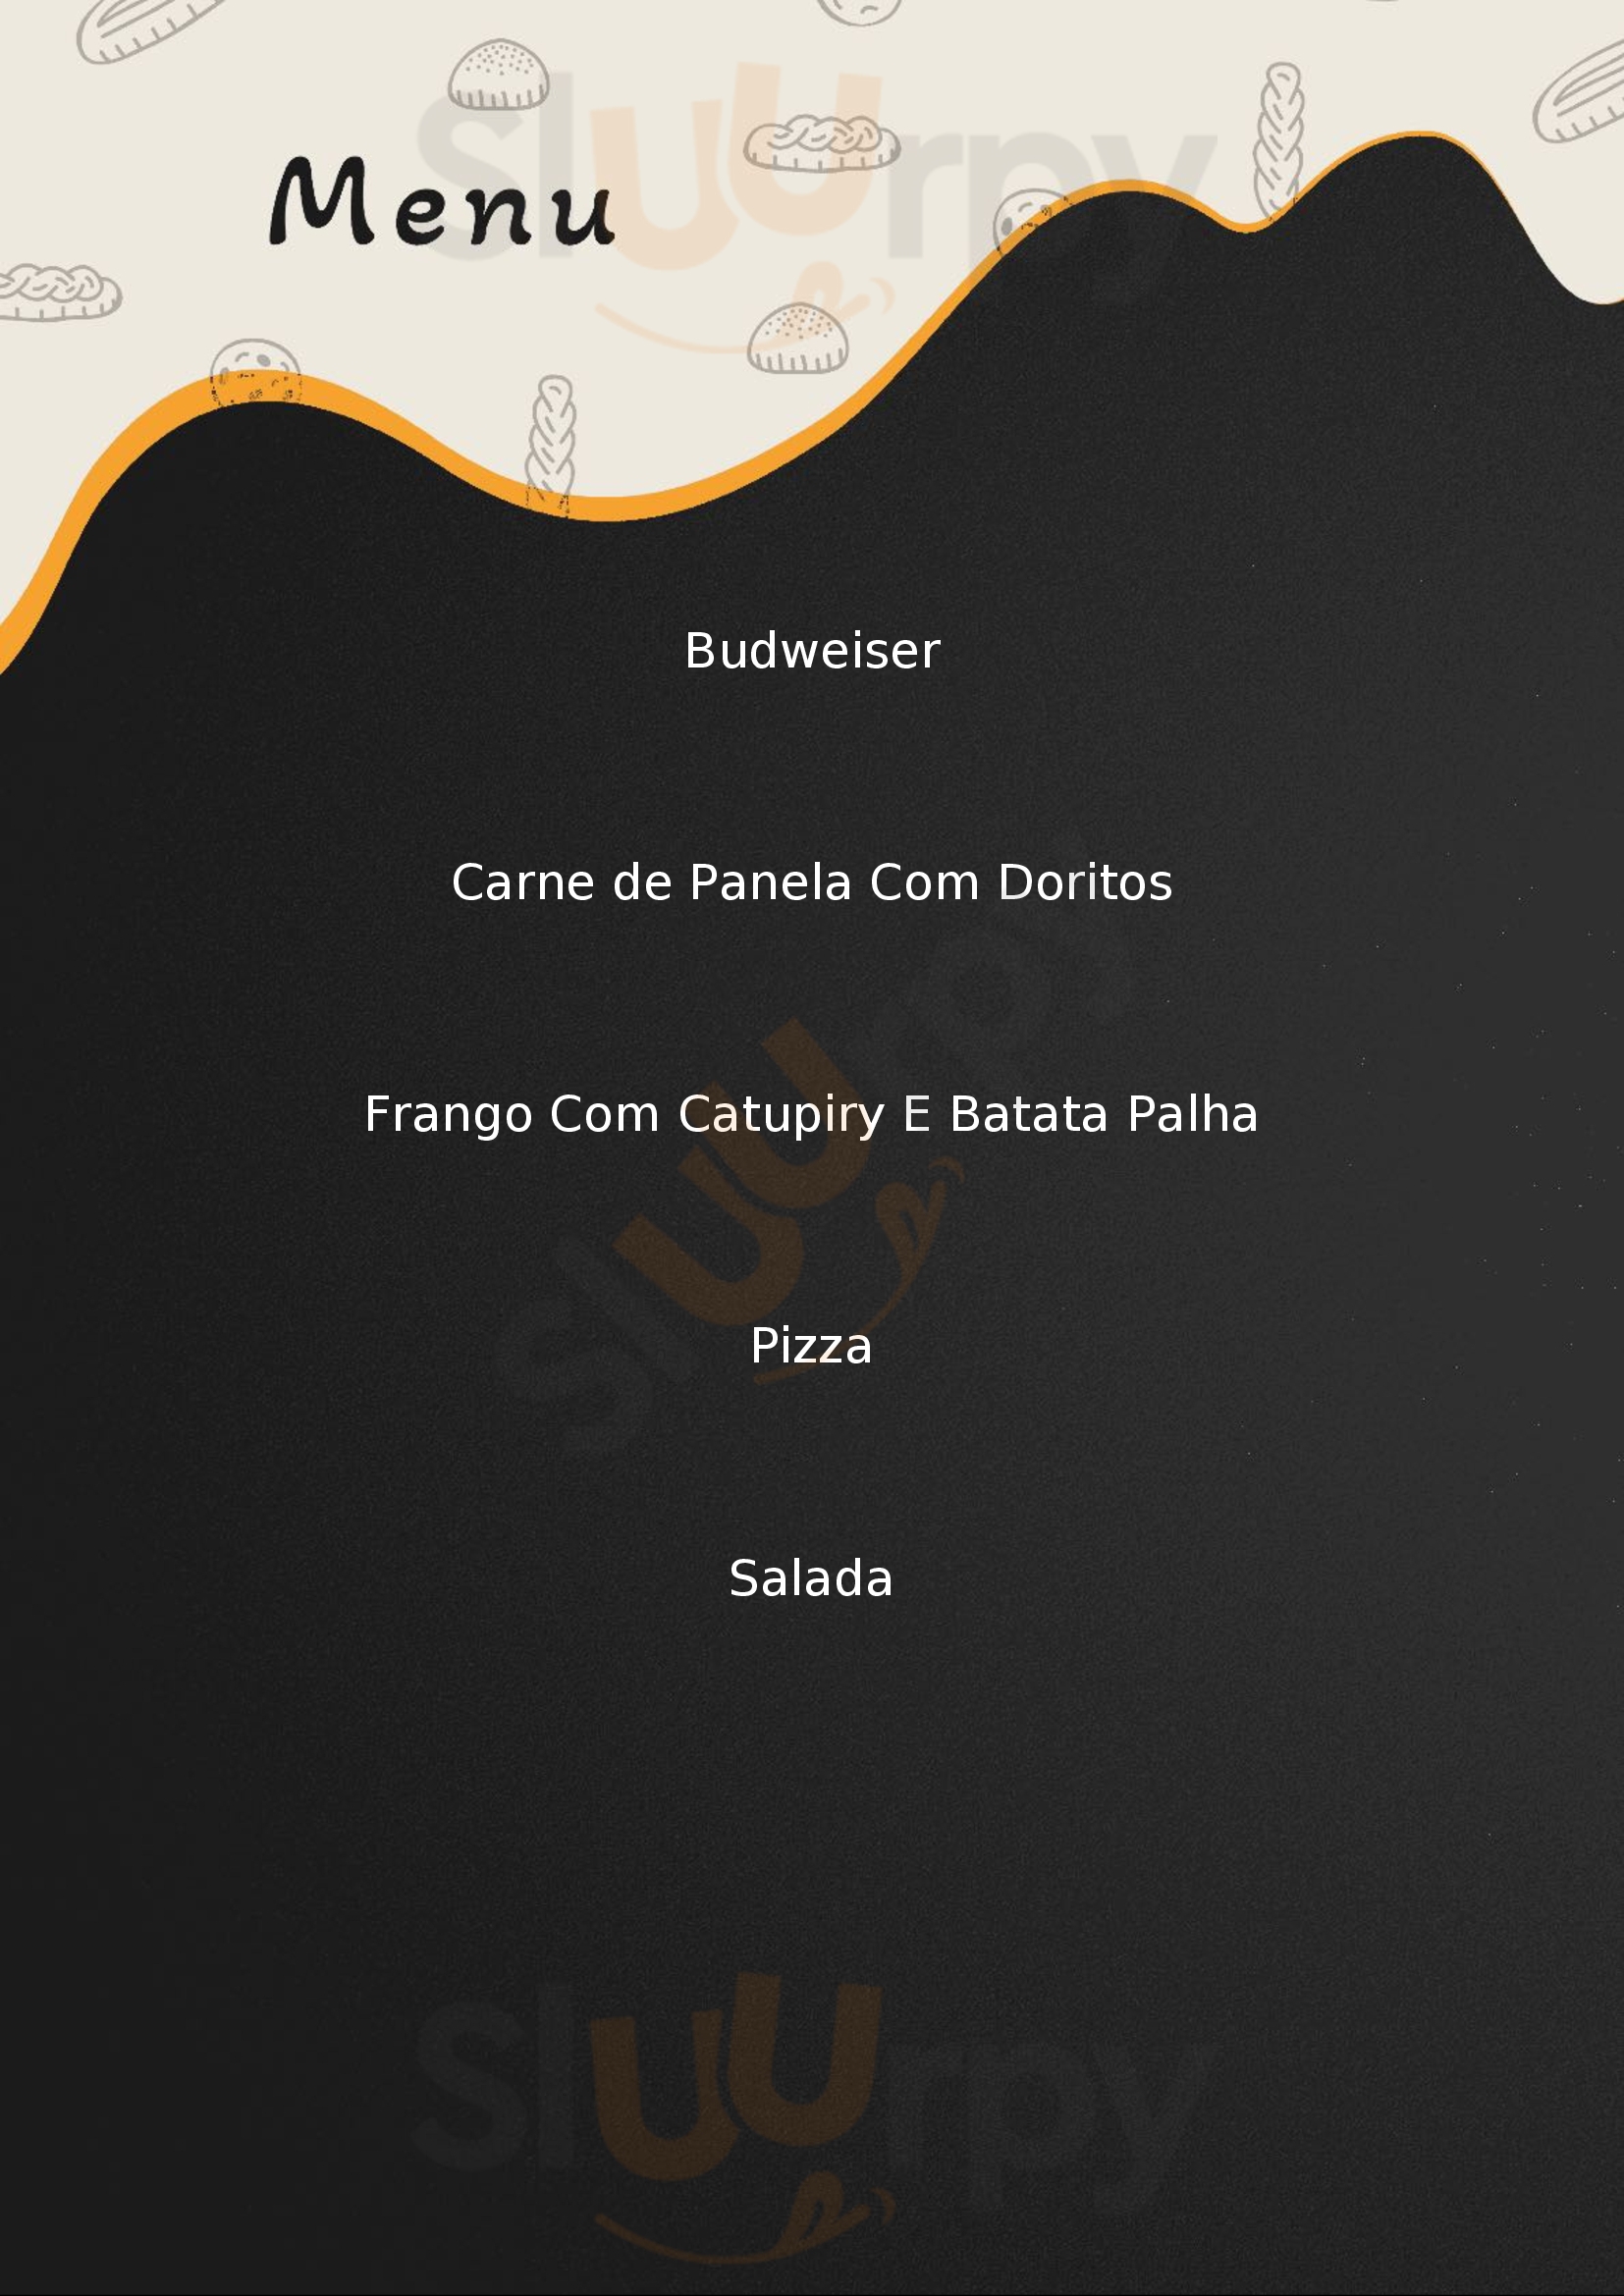 Giggio Pizza Caxias Do Sul Menu - 1